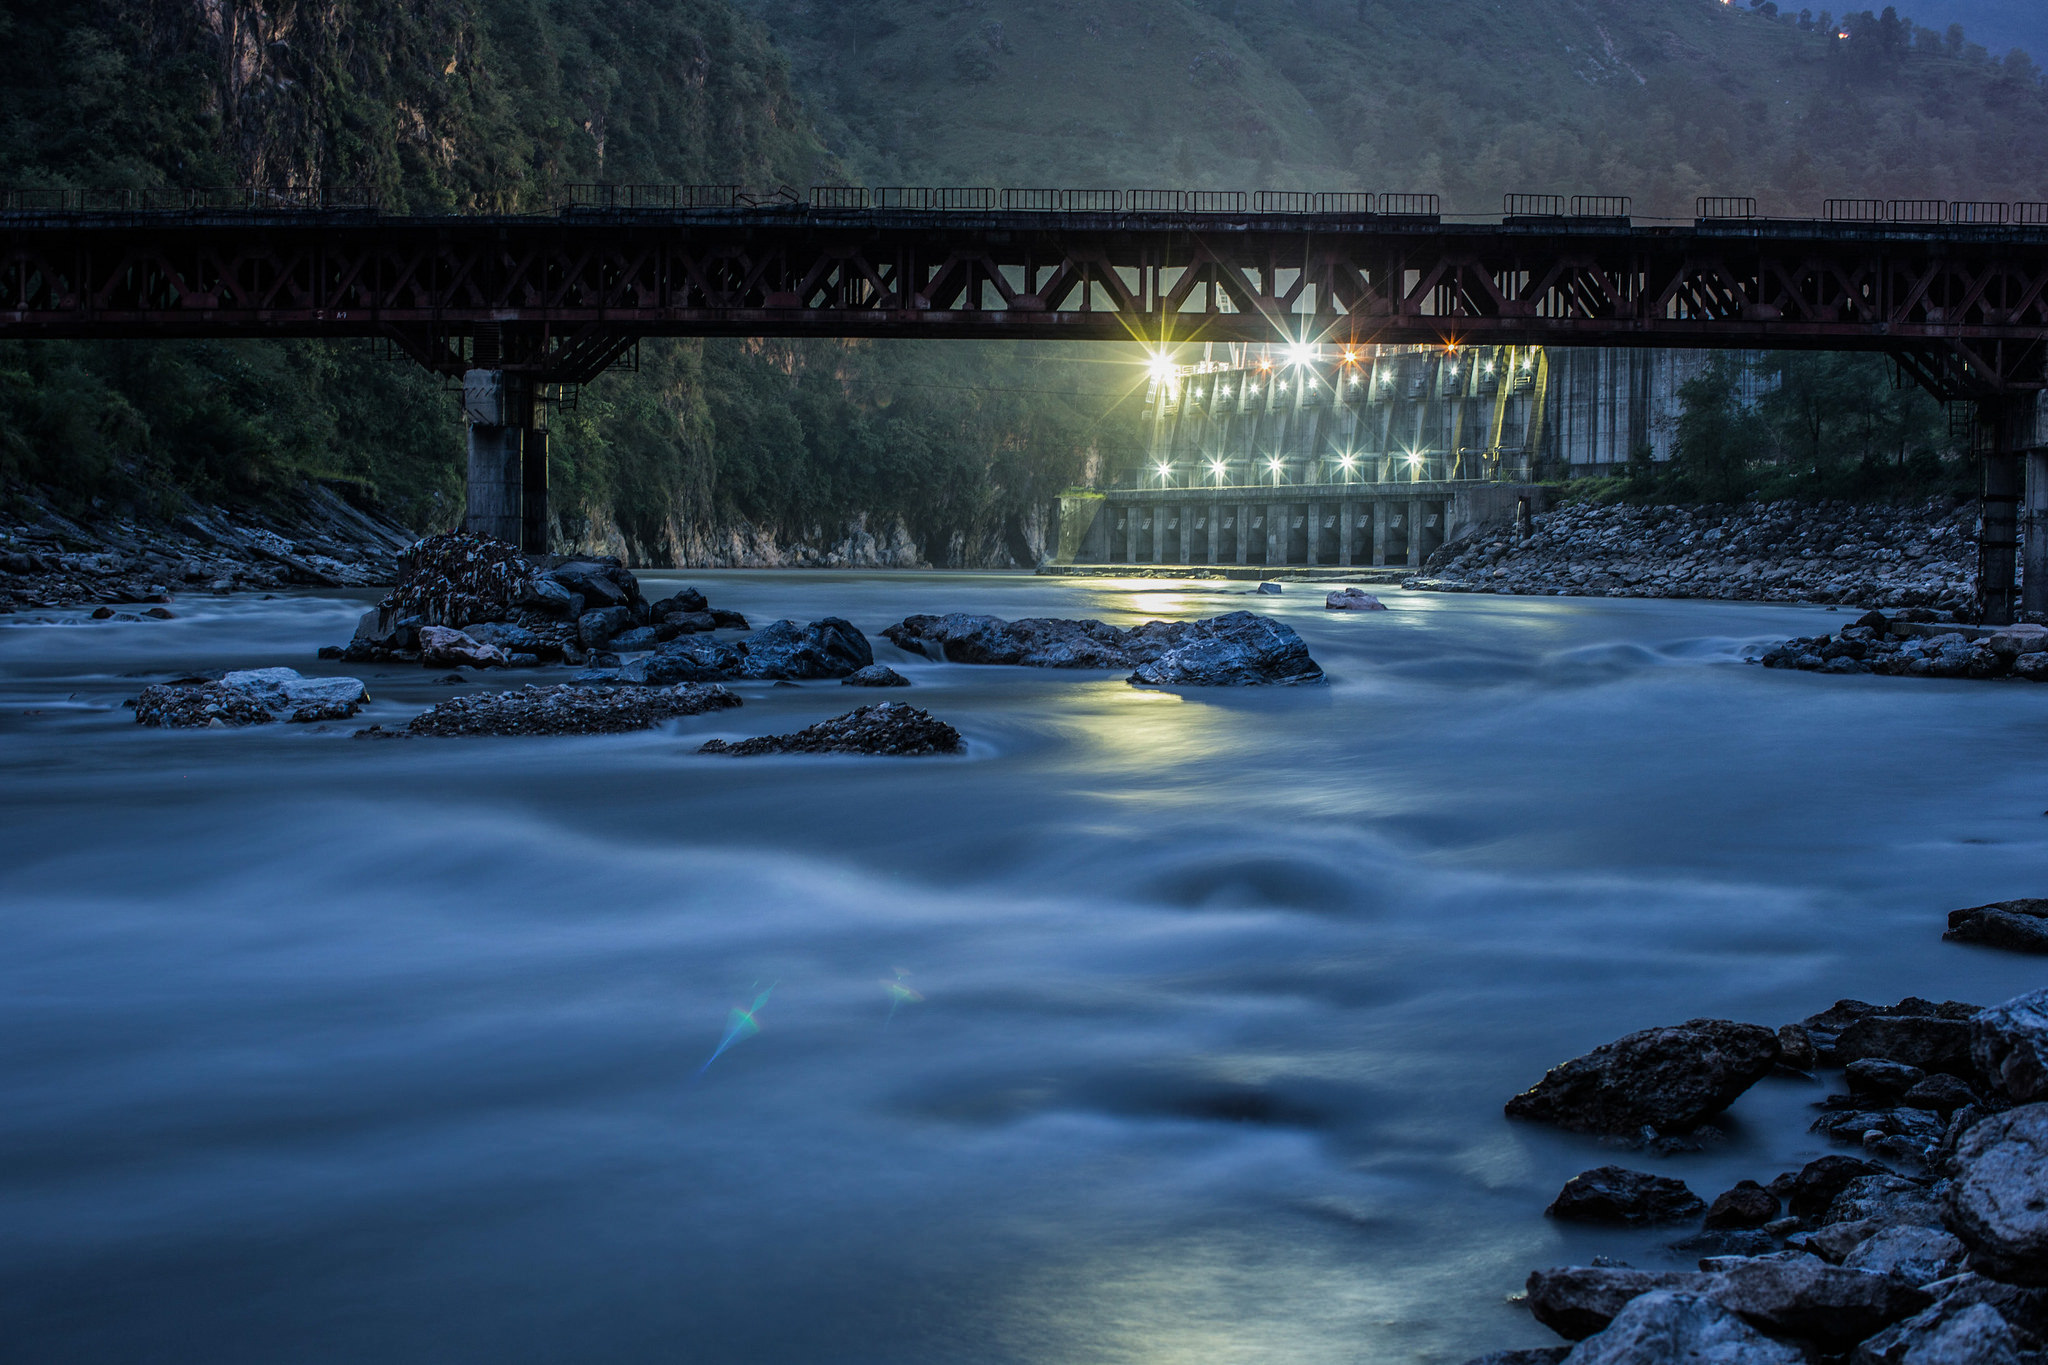 The Kali Gandaki dam